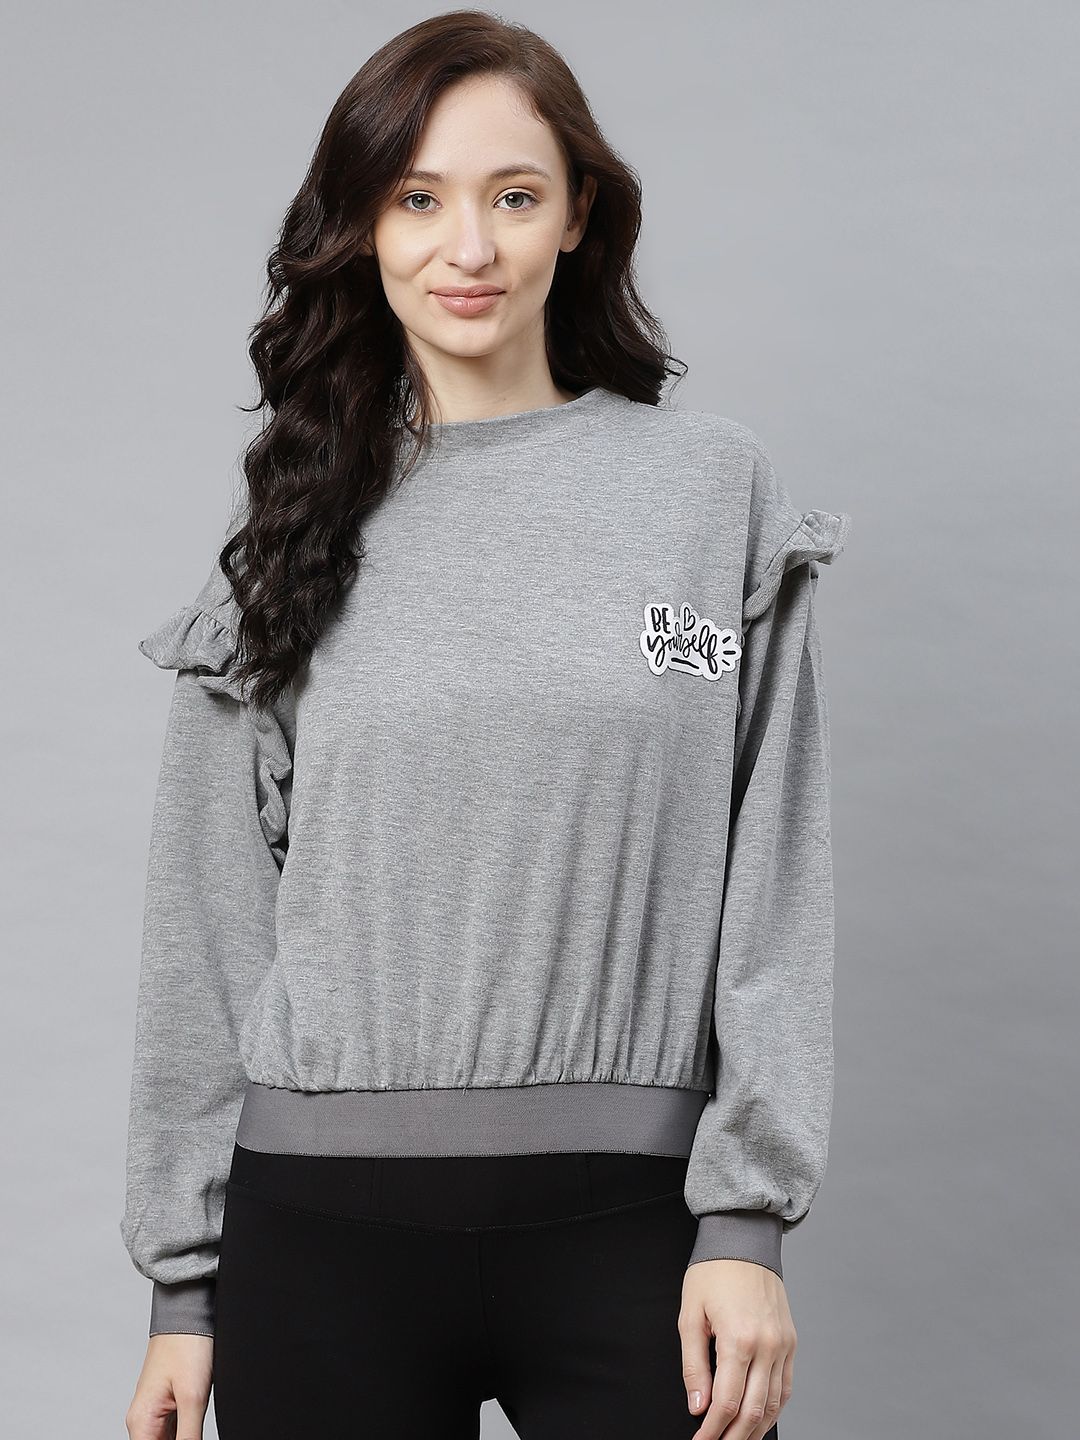 Hubberholme Women Grey Melange Solid Sweatshirt Price in India